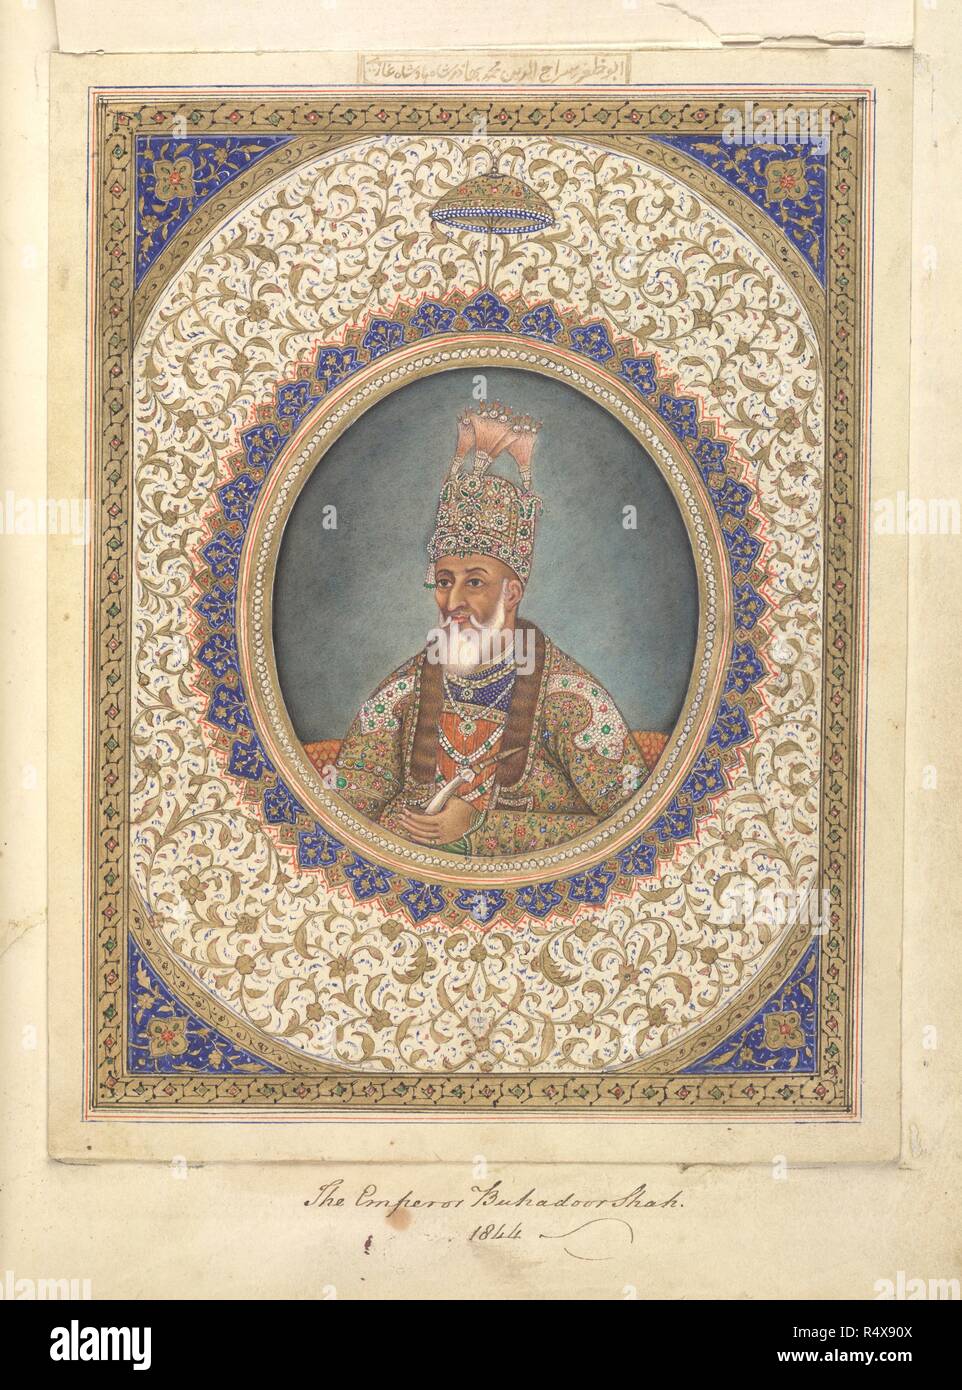 Portrait von Bahadur Shah, der letzte Großmogul von Indien. Reminiszenzen an Imperial Delhi. c 1840. Quelle: Hinzufügen. Oder. 5475, f, 17. Autor: Mazhar â € "Ali Khan. Stockfoto